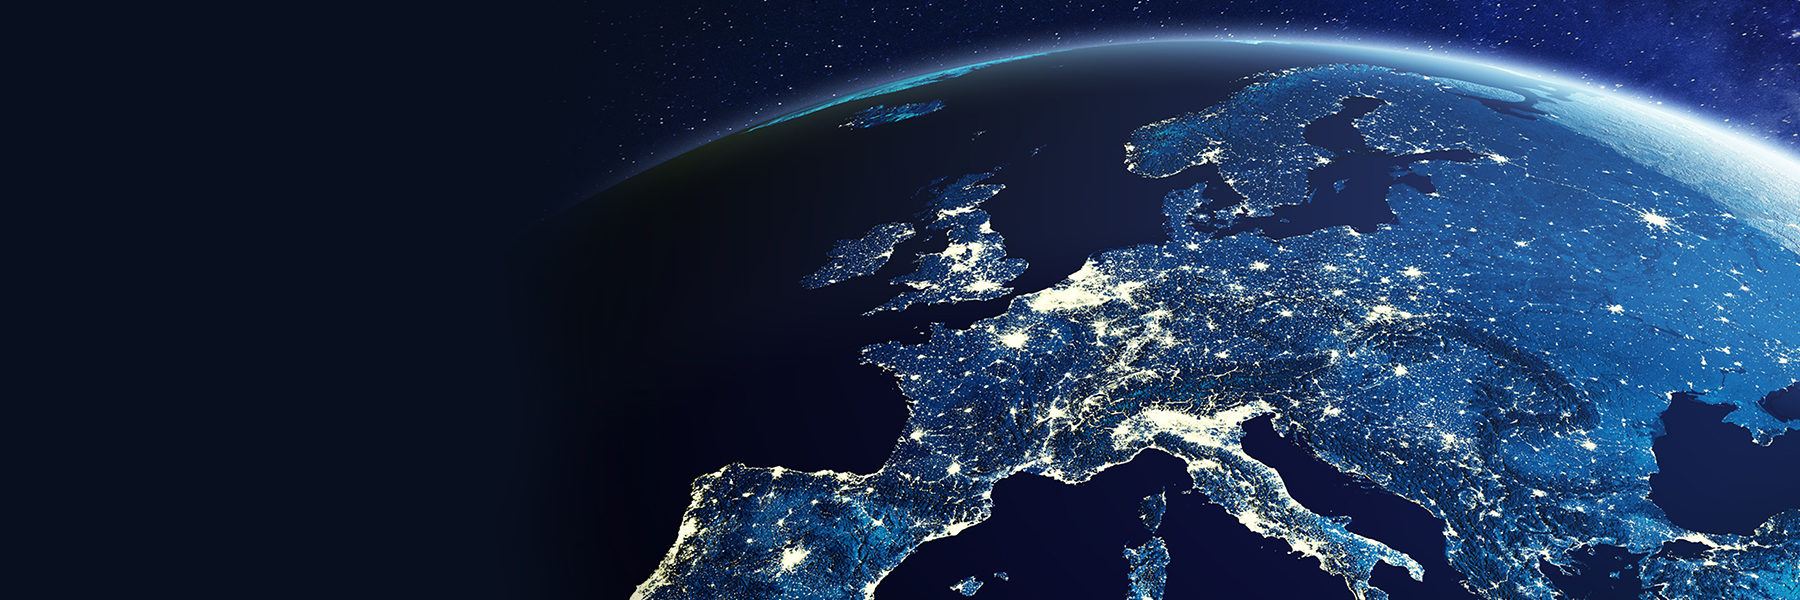 Globe image with Europe showcased